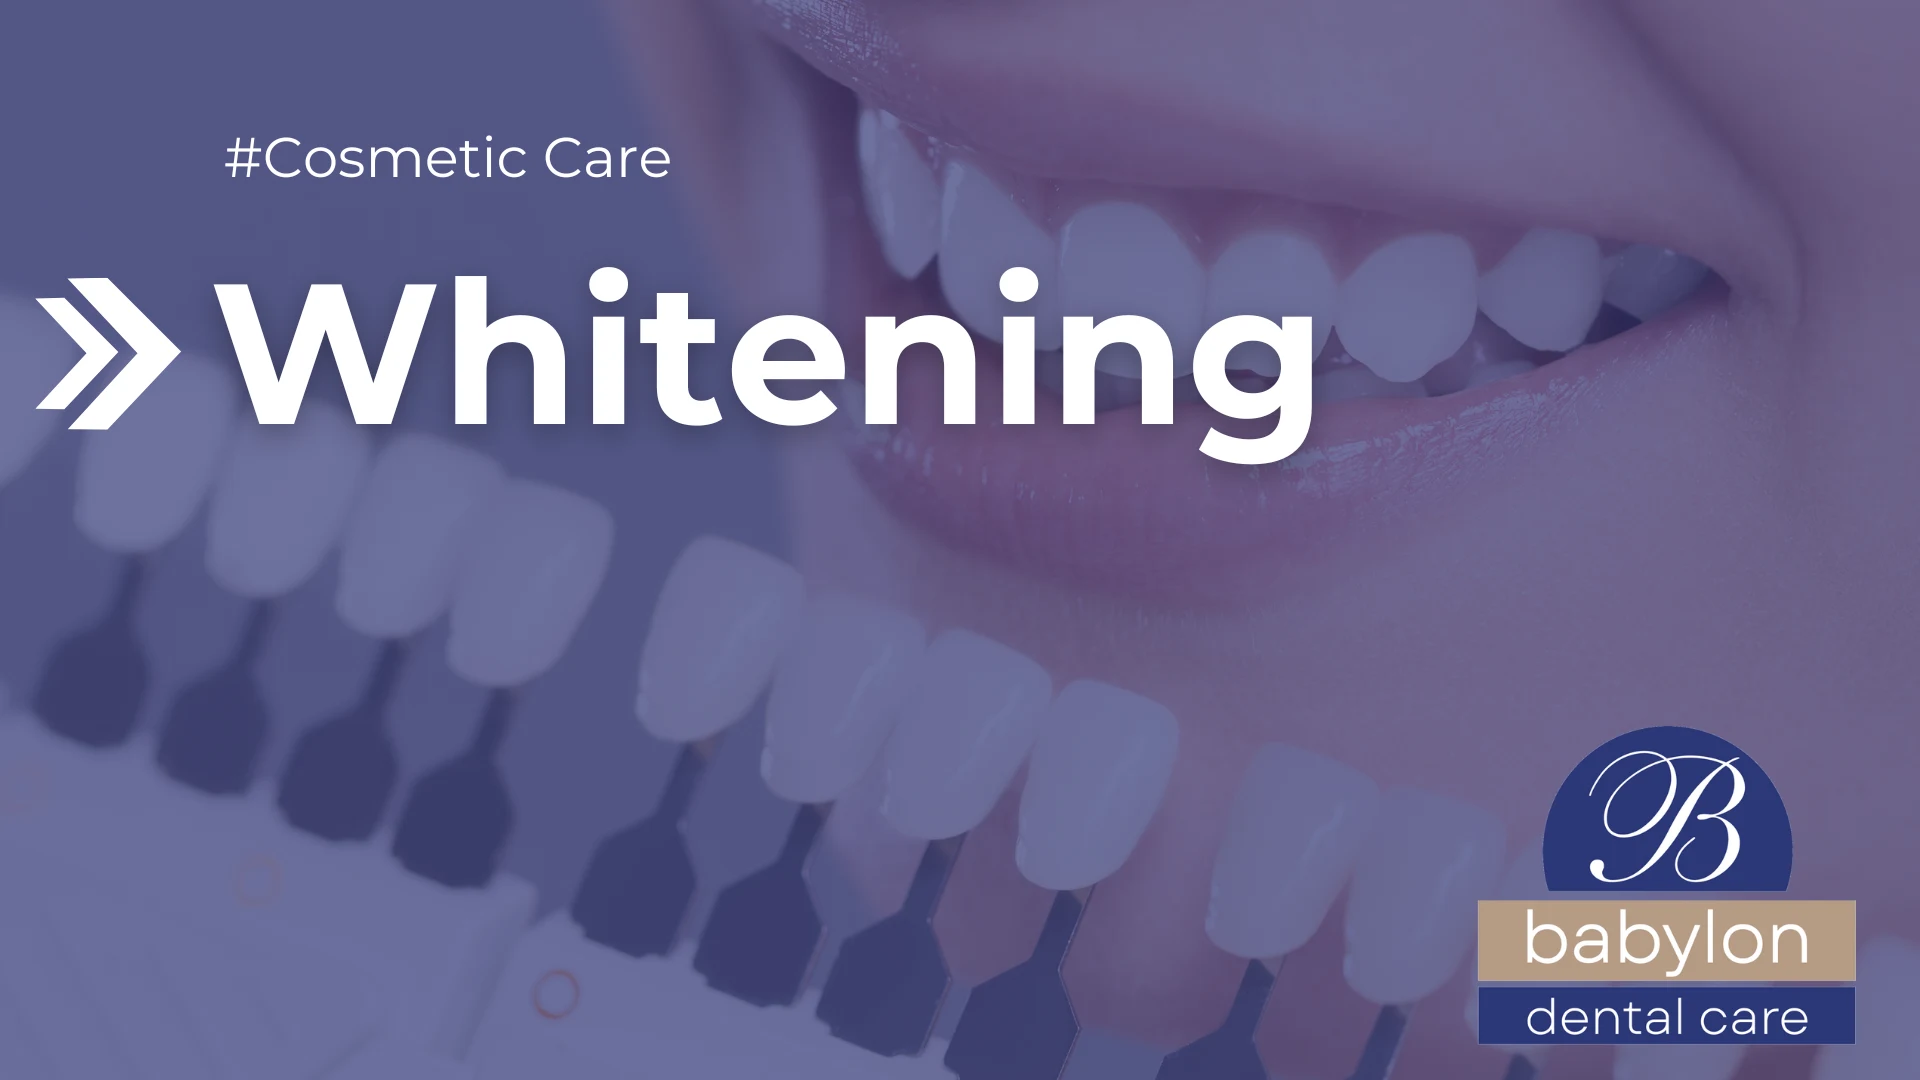 Whitening Image - new logo